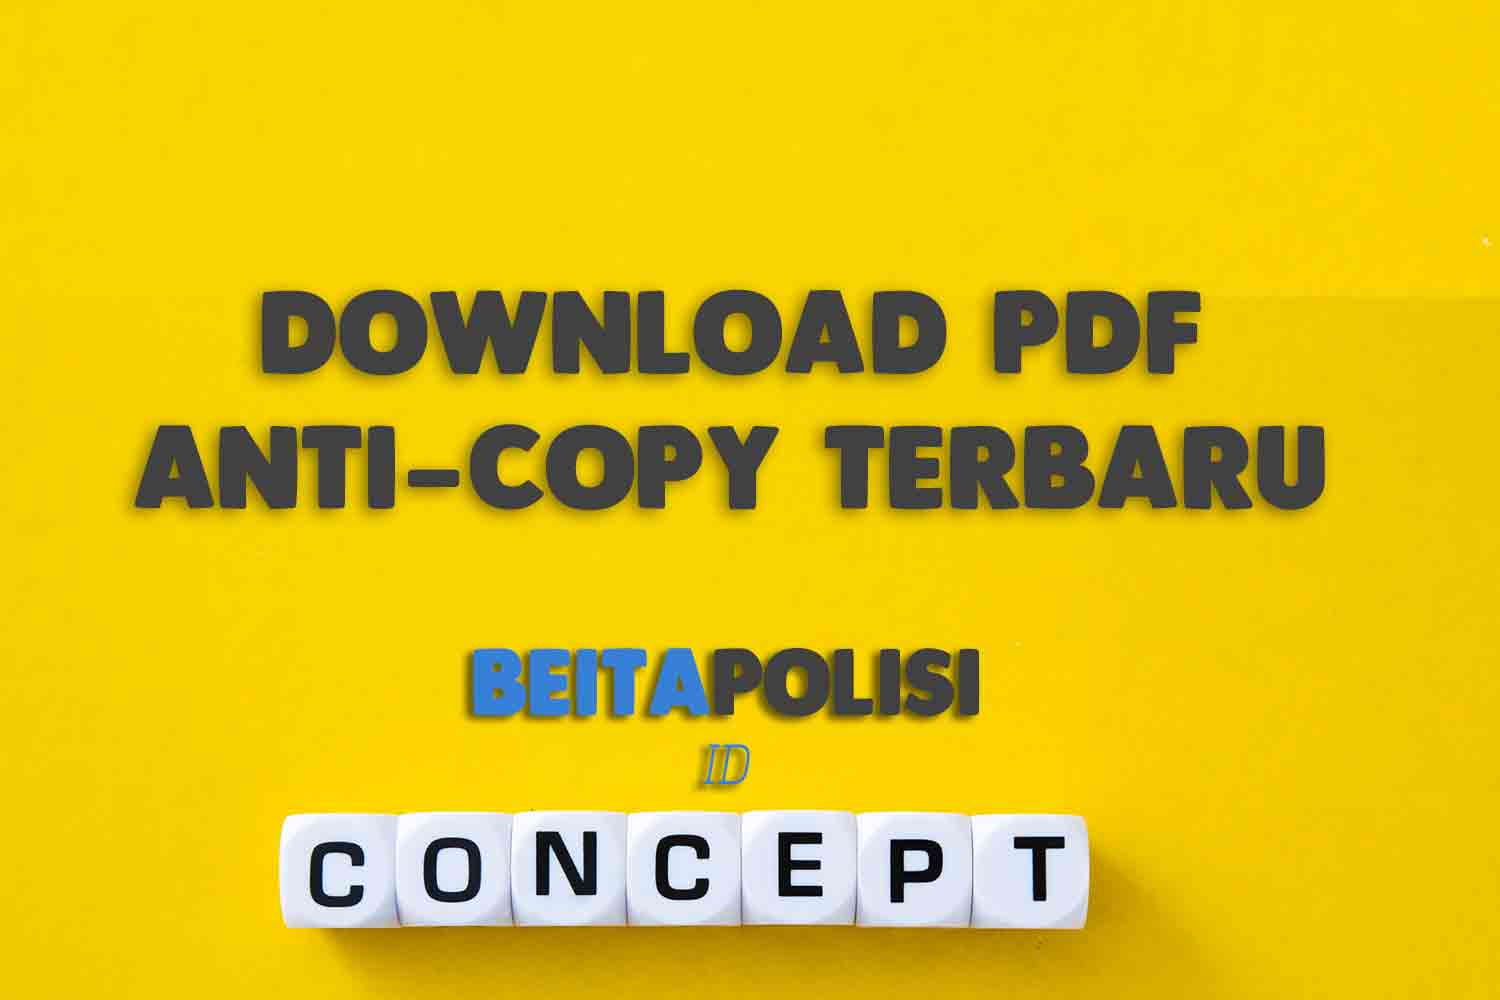 Download Pdf Anti Copy Terbaru Gratis Untuk Pc Windows 11 Atau 10